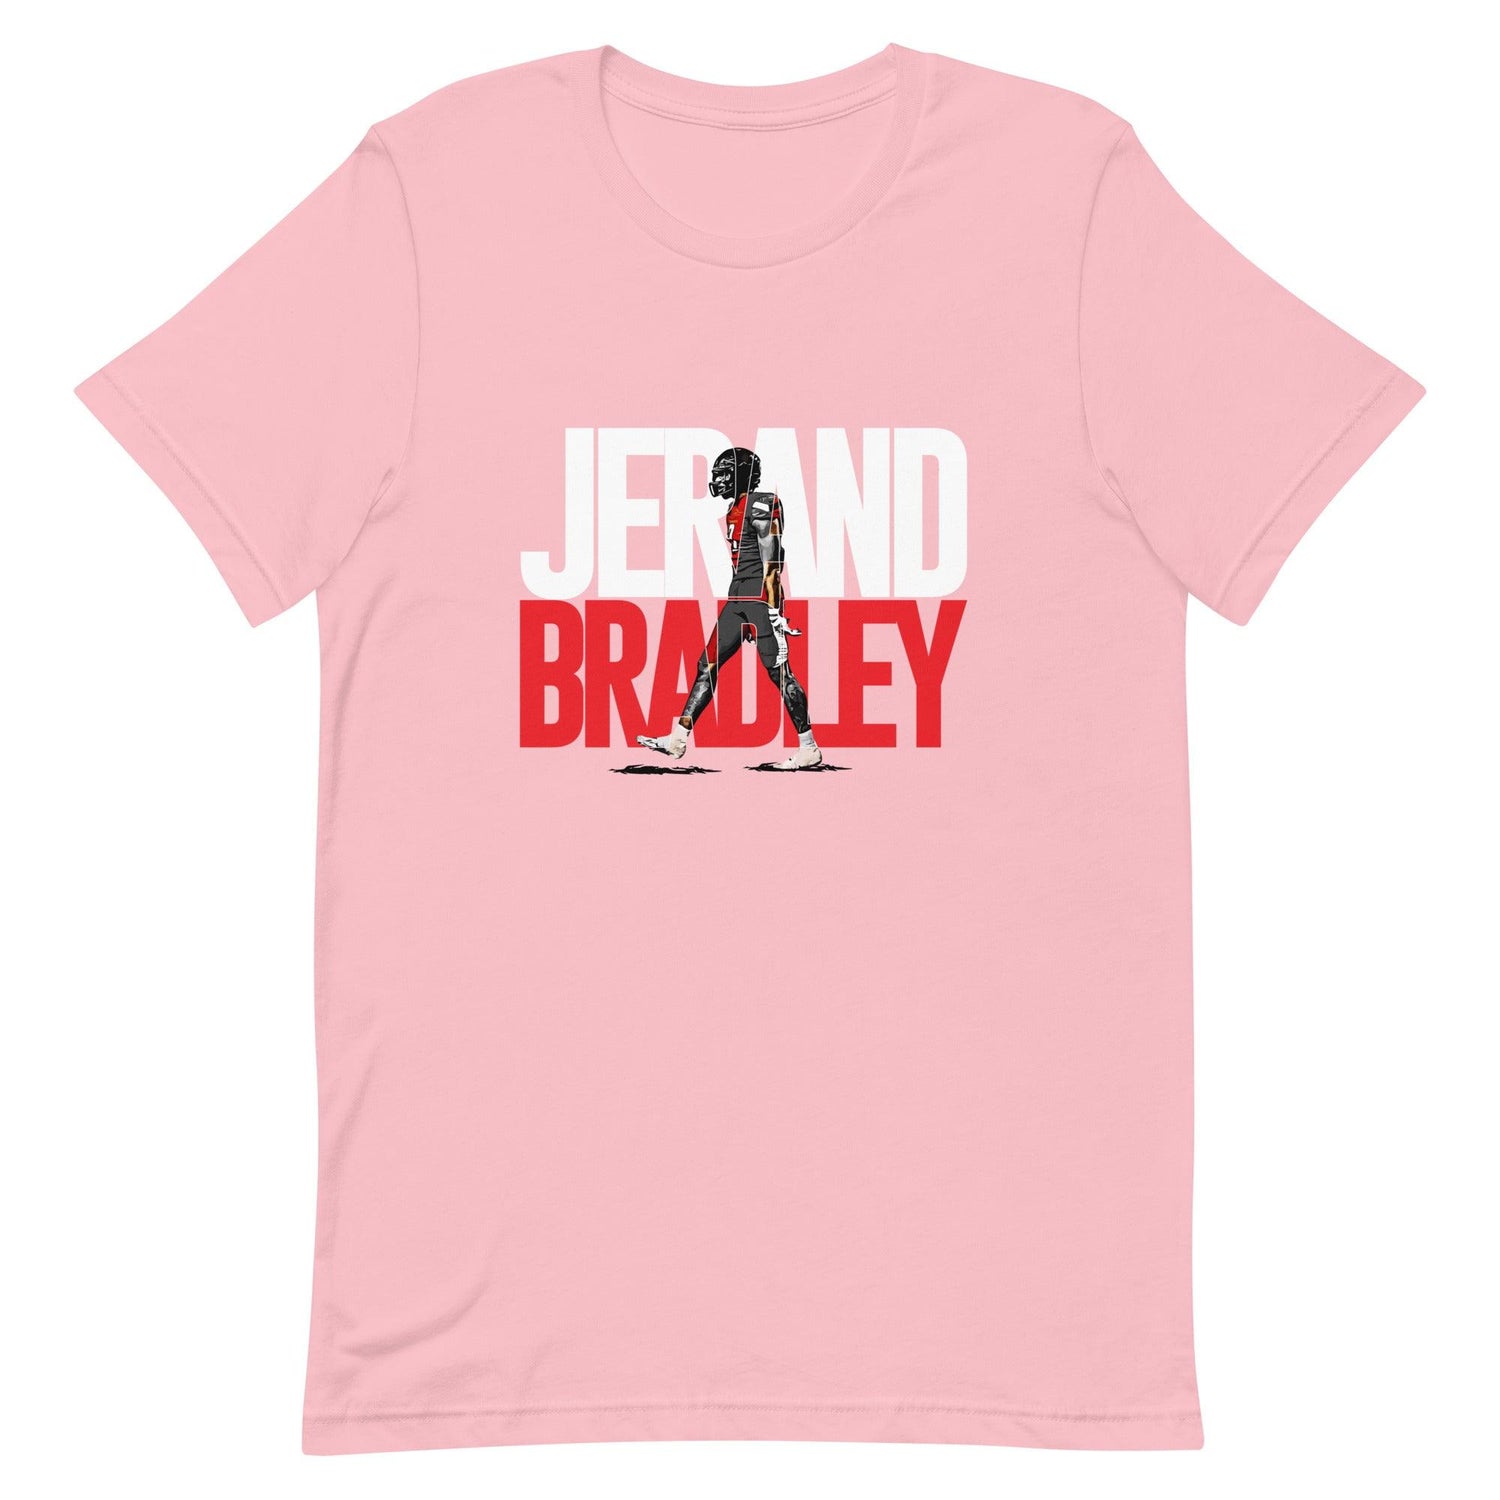 Jerand Bradley "Gameday" t-shirt - Fan Arch